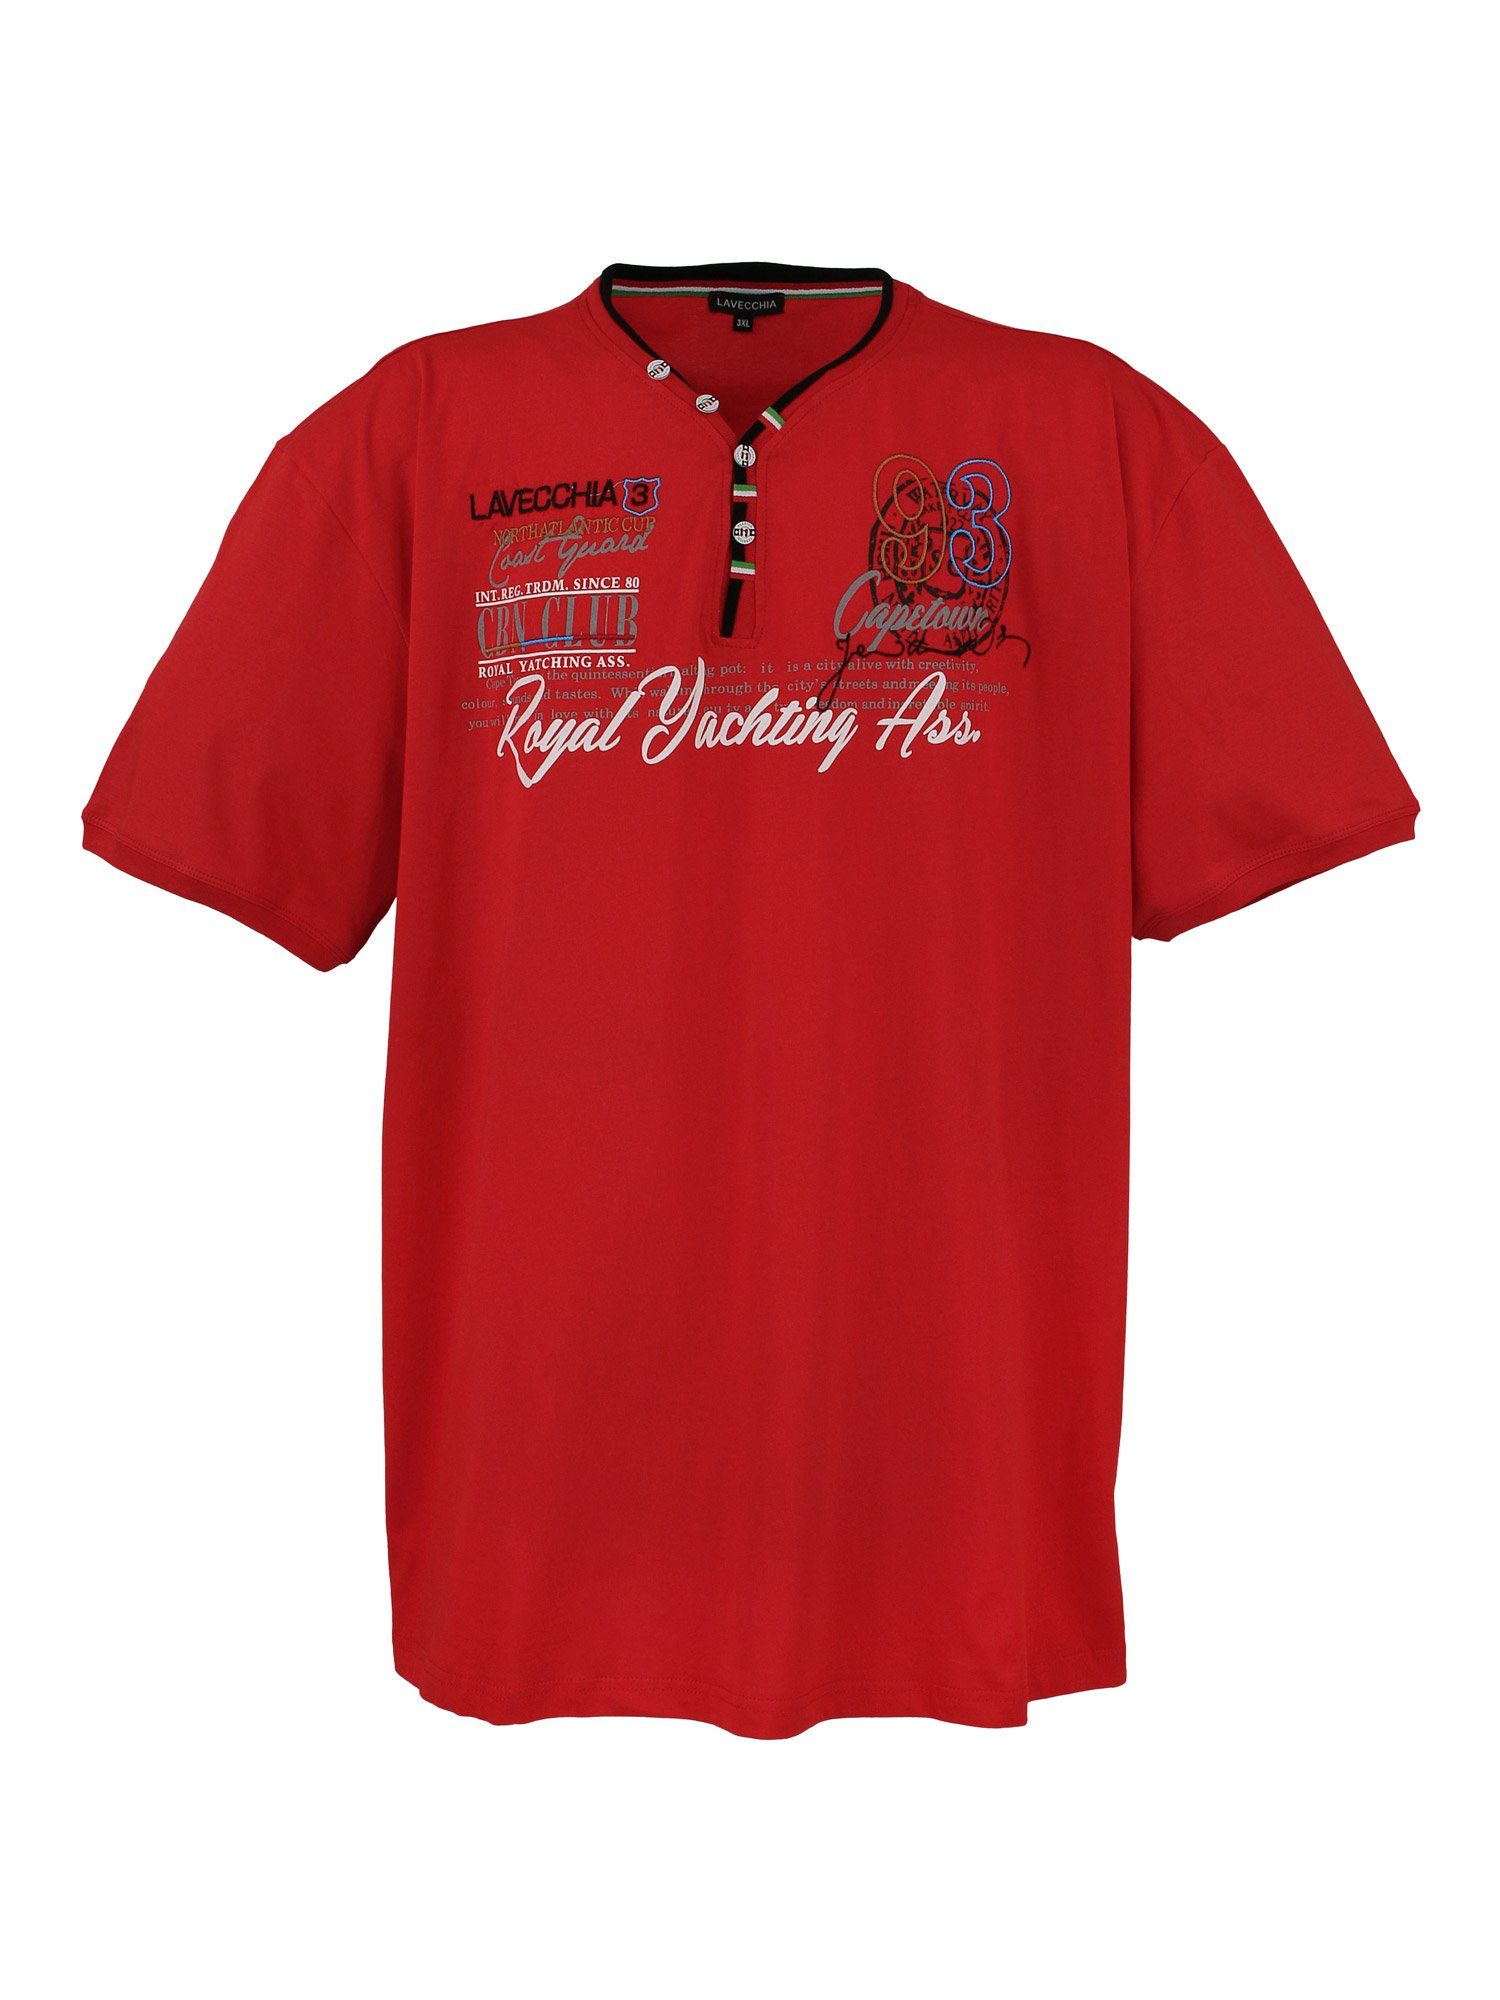 Lavecchia T-Shirt Übergrößen V-Ausschnitt V-Shirt LV-608 rot Herren Herrenshirt